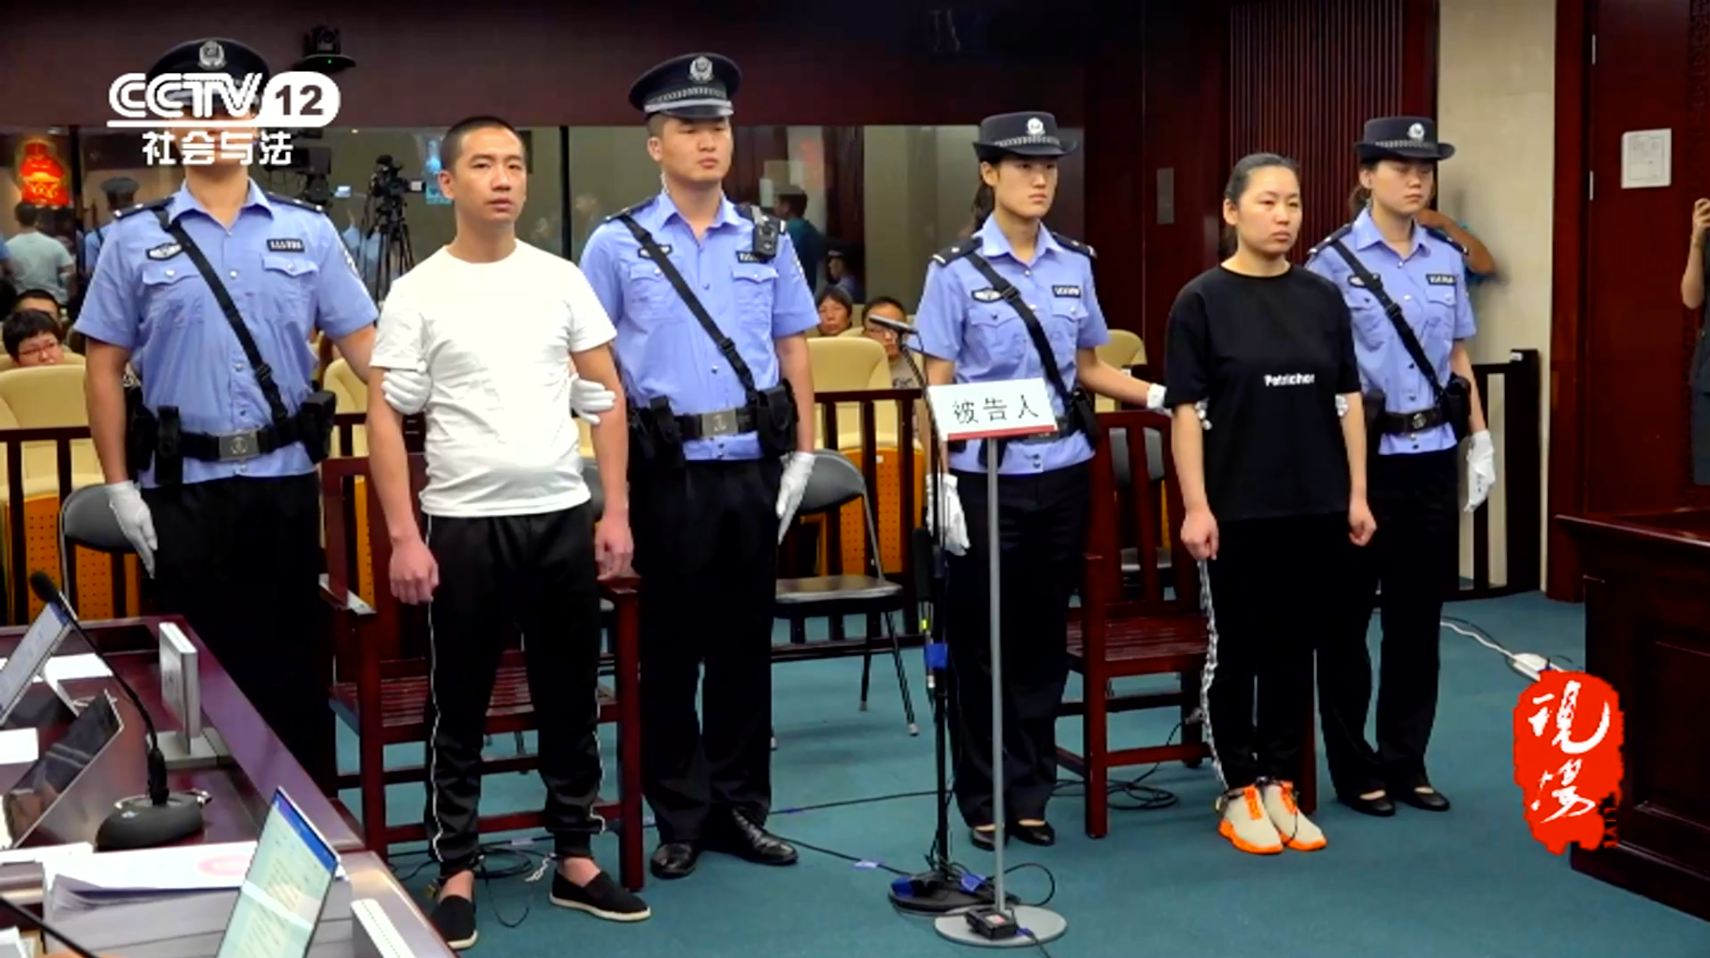 变压器中查获近8公斤毒品沧州89年女子被指控跨国贩毒